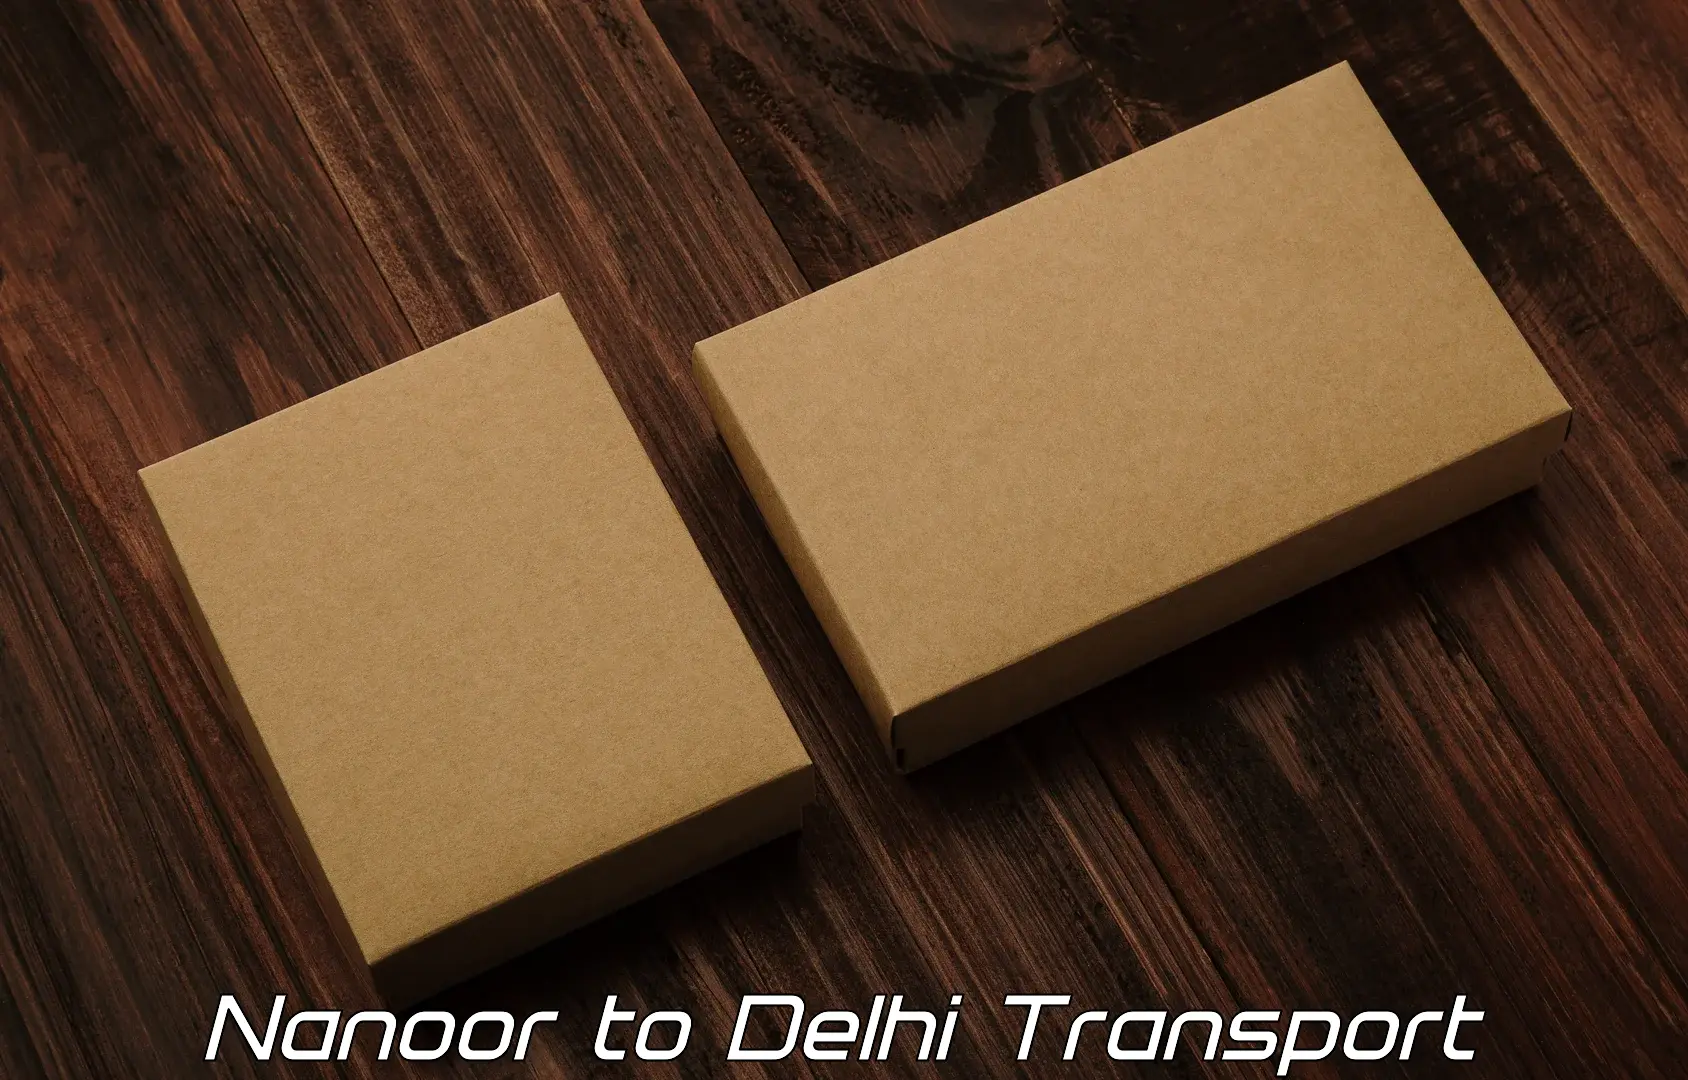 Truck transport companies in India Nanoor to Delhi